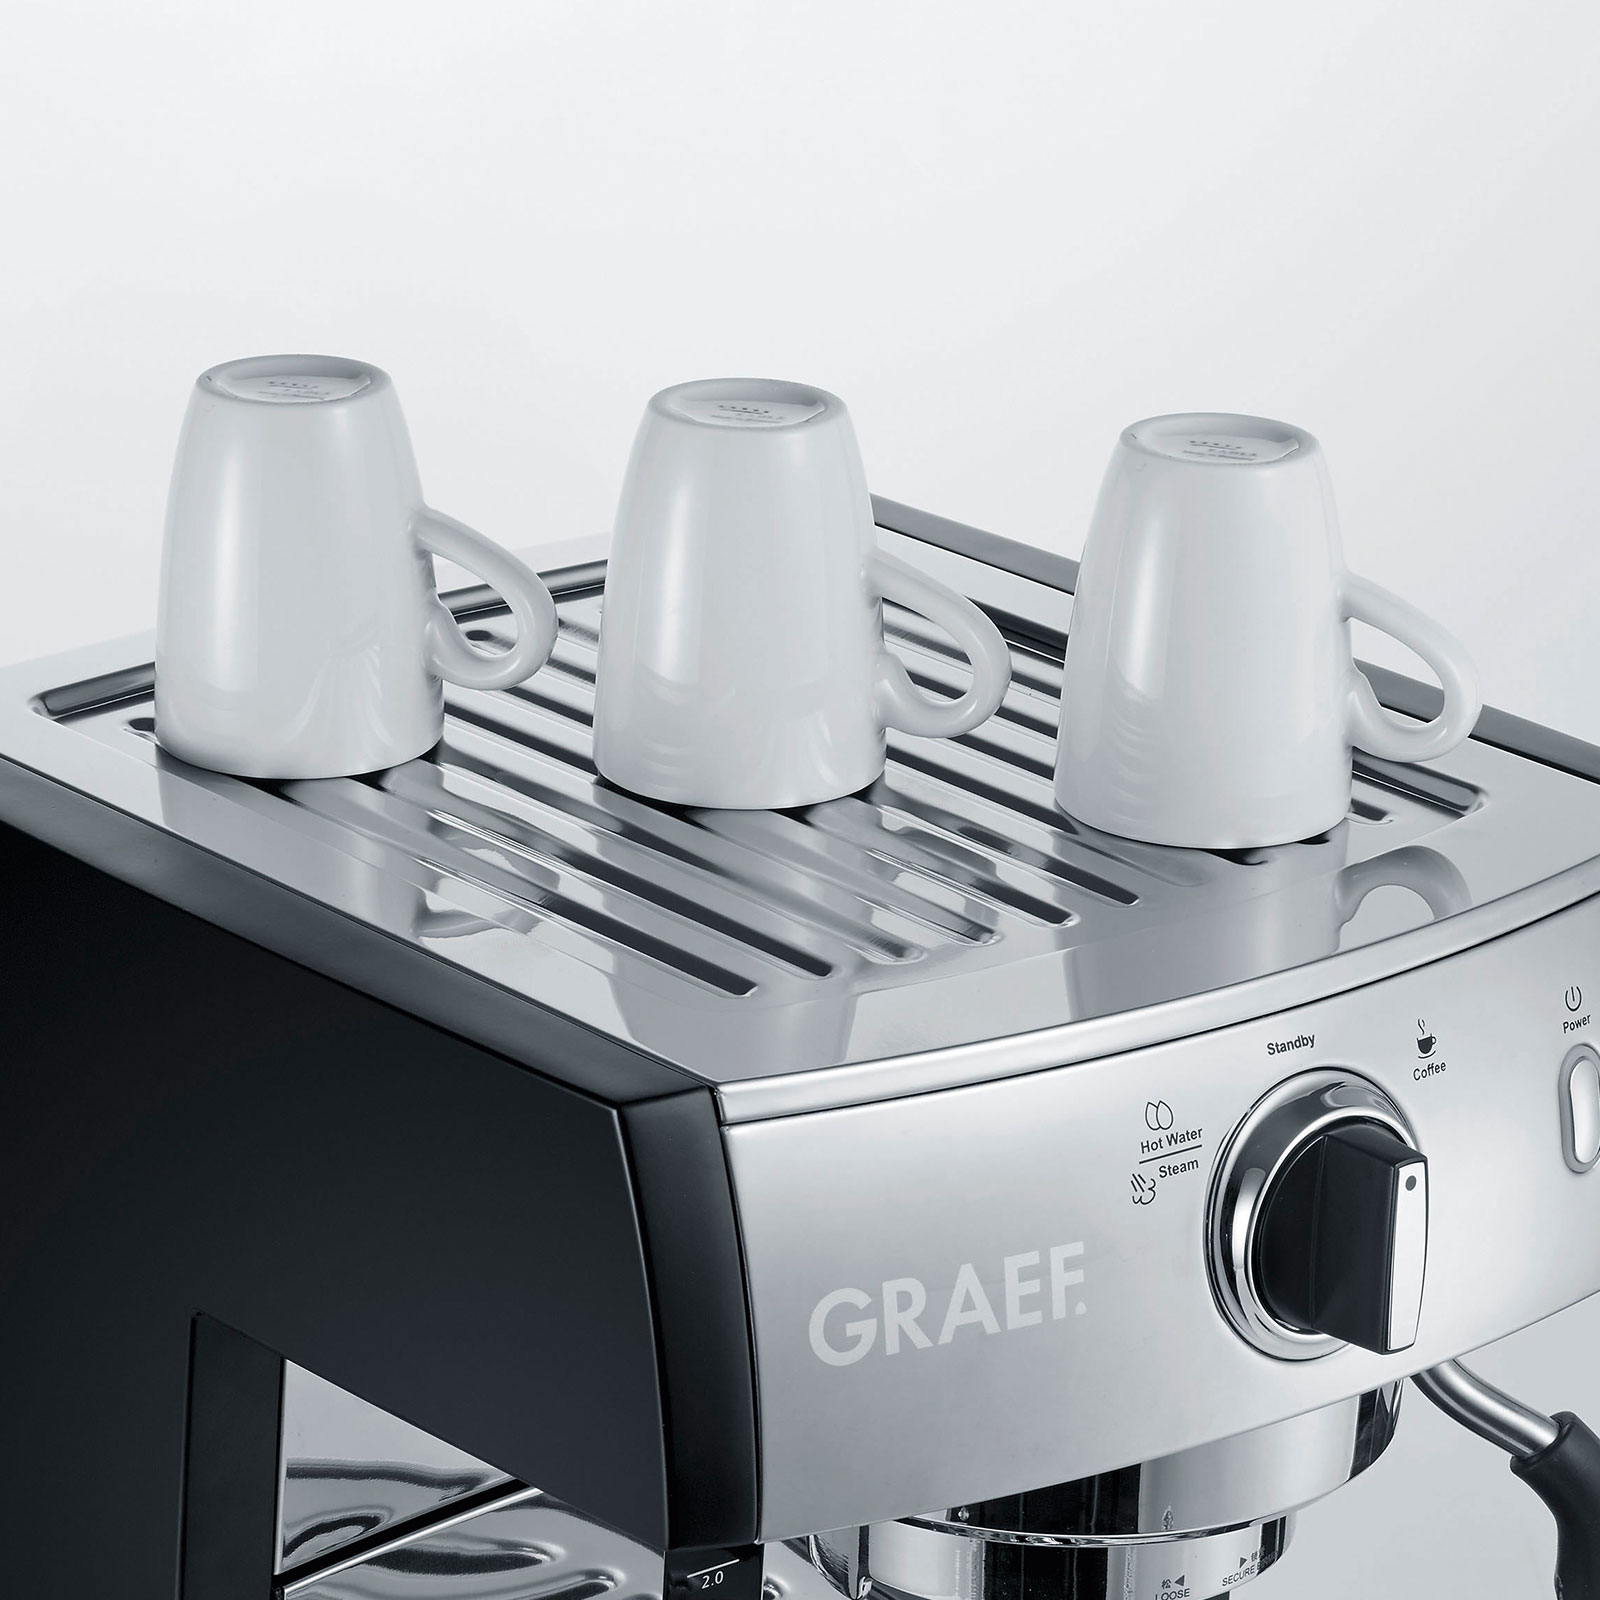 GRAEF ES 702 EU pivalla Set Siebträger inkl. Kaffeemühle CM702EU